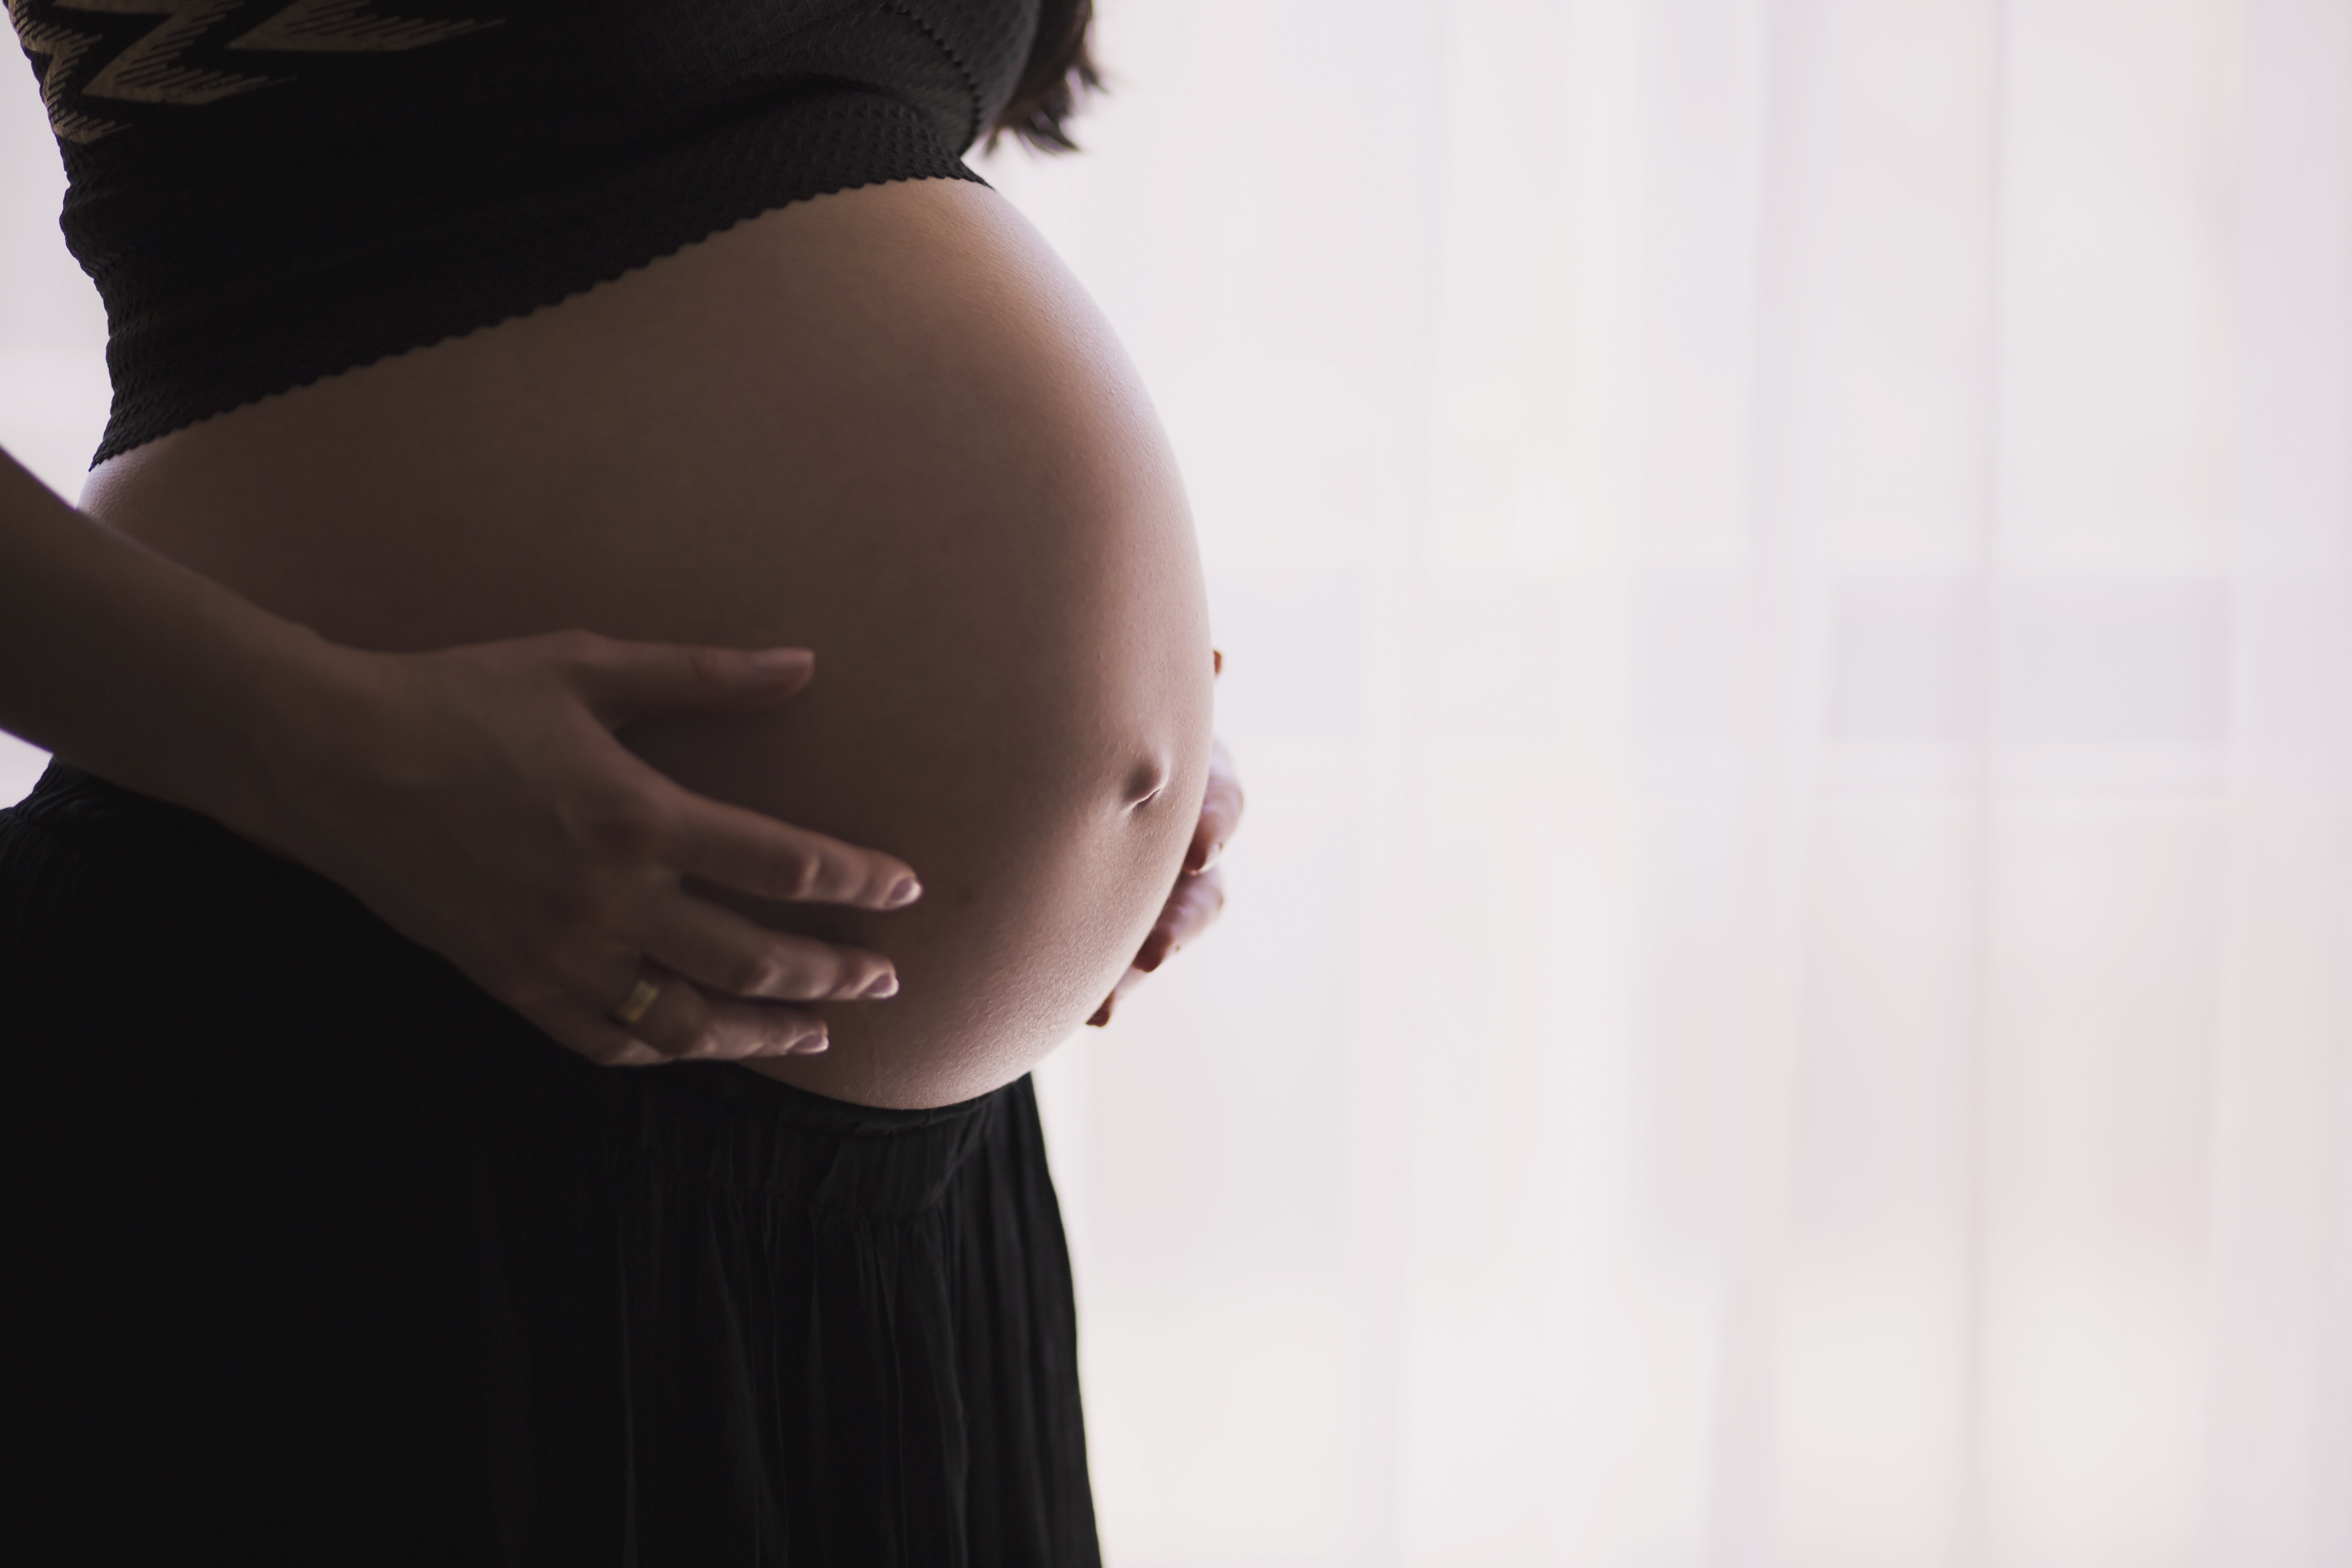 Las madres de bebés diagnosticados pequeños para la edad gestacional durante el embarazo muestran una peor salud emocional que los padres